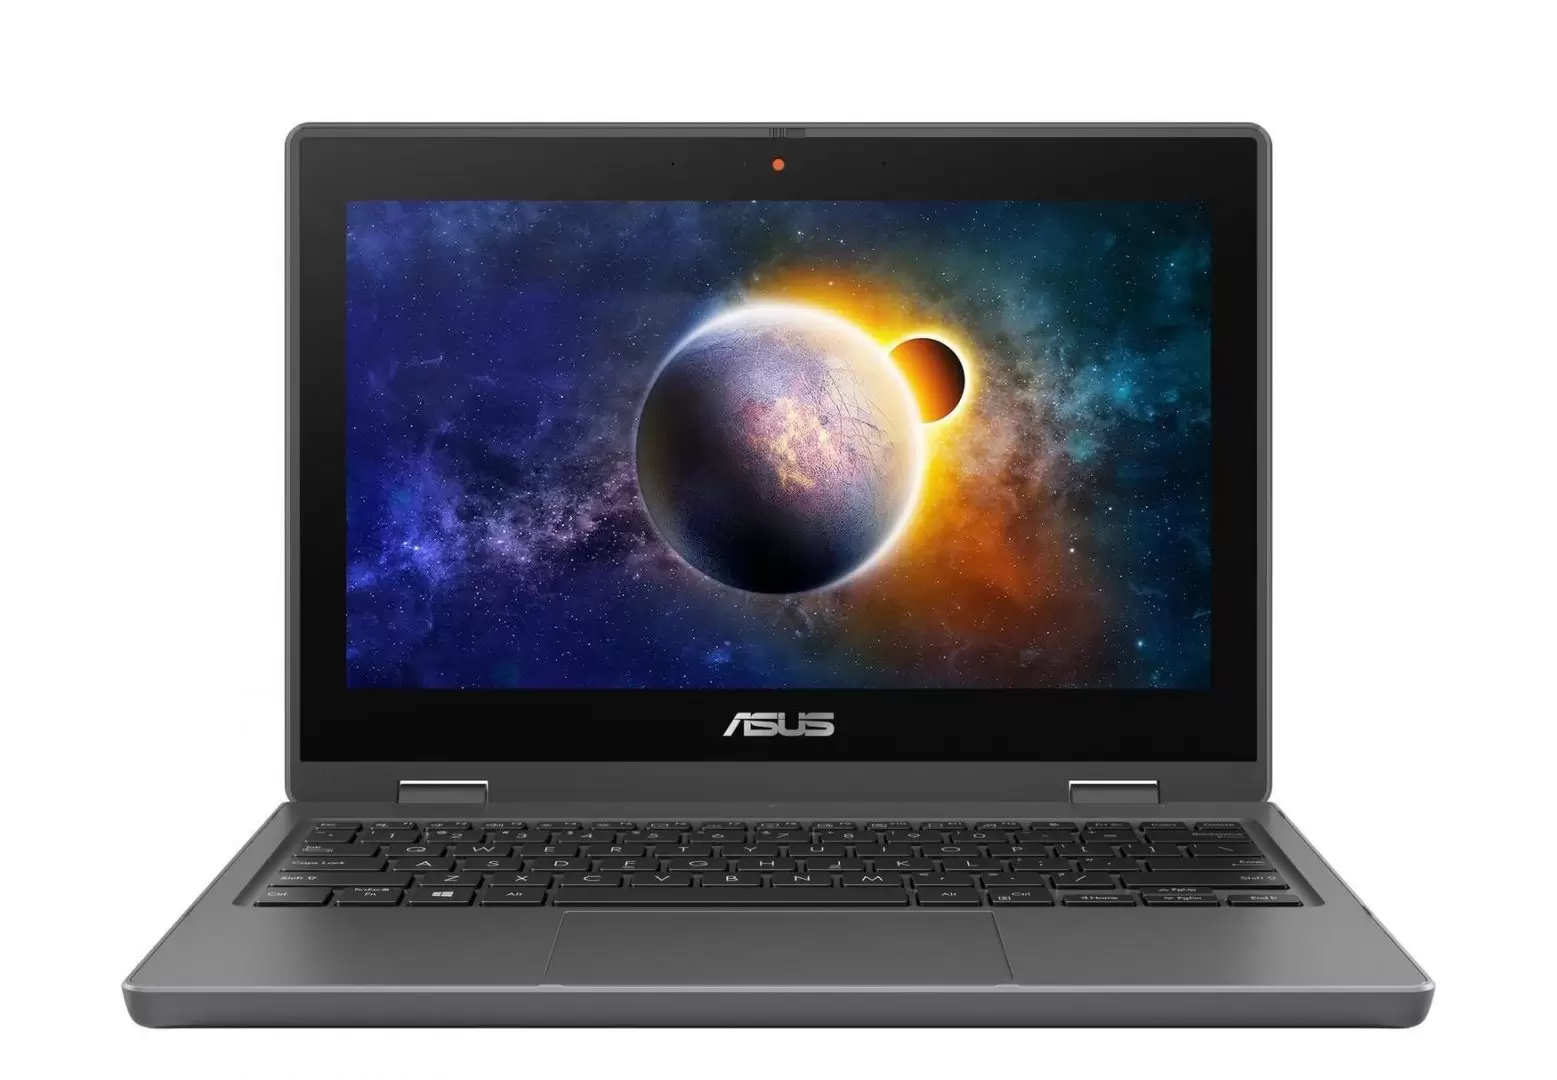 ASUS Luncurkan Laptop BR1100 Series, Laptop Khusus Pelajar Anak-anak